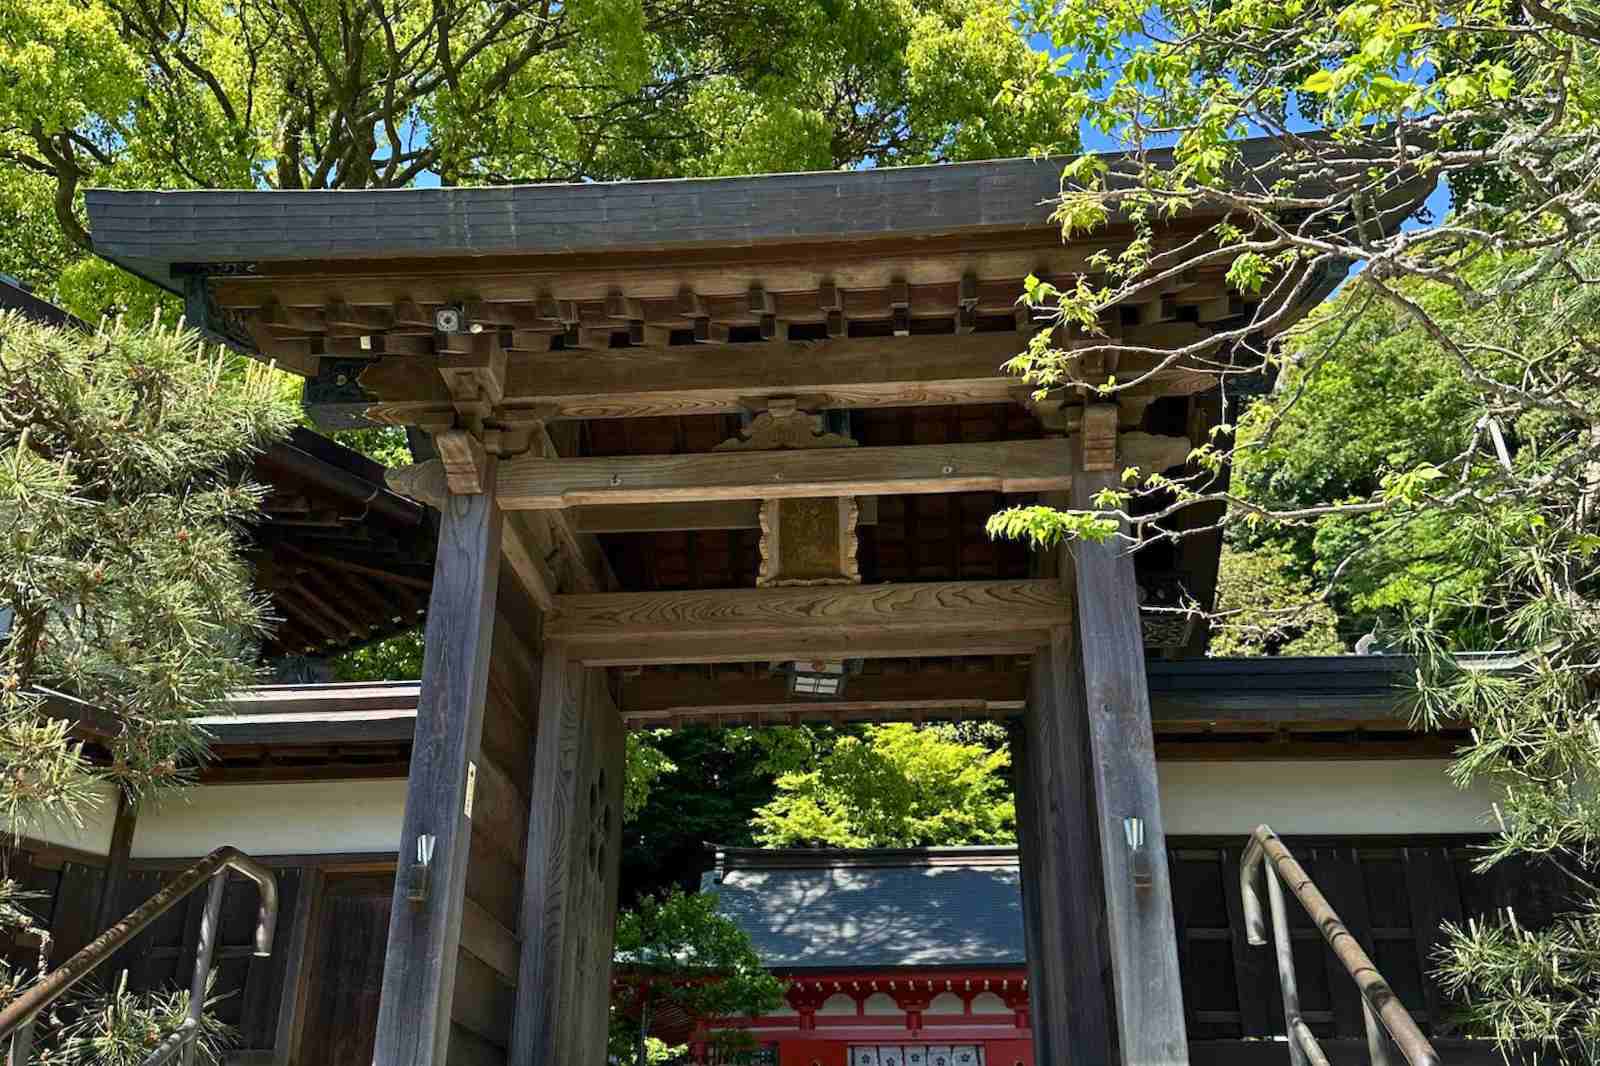 【鎌倉】今日は一人でぼーっと過ごしたい。そんな時におすすめの穴場神社